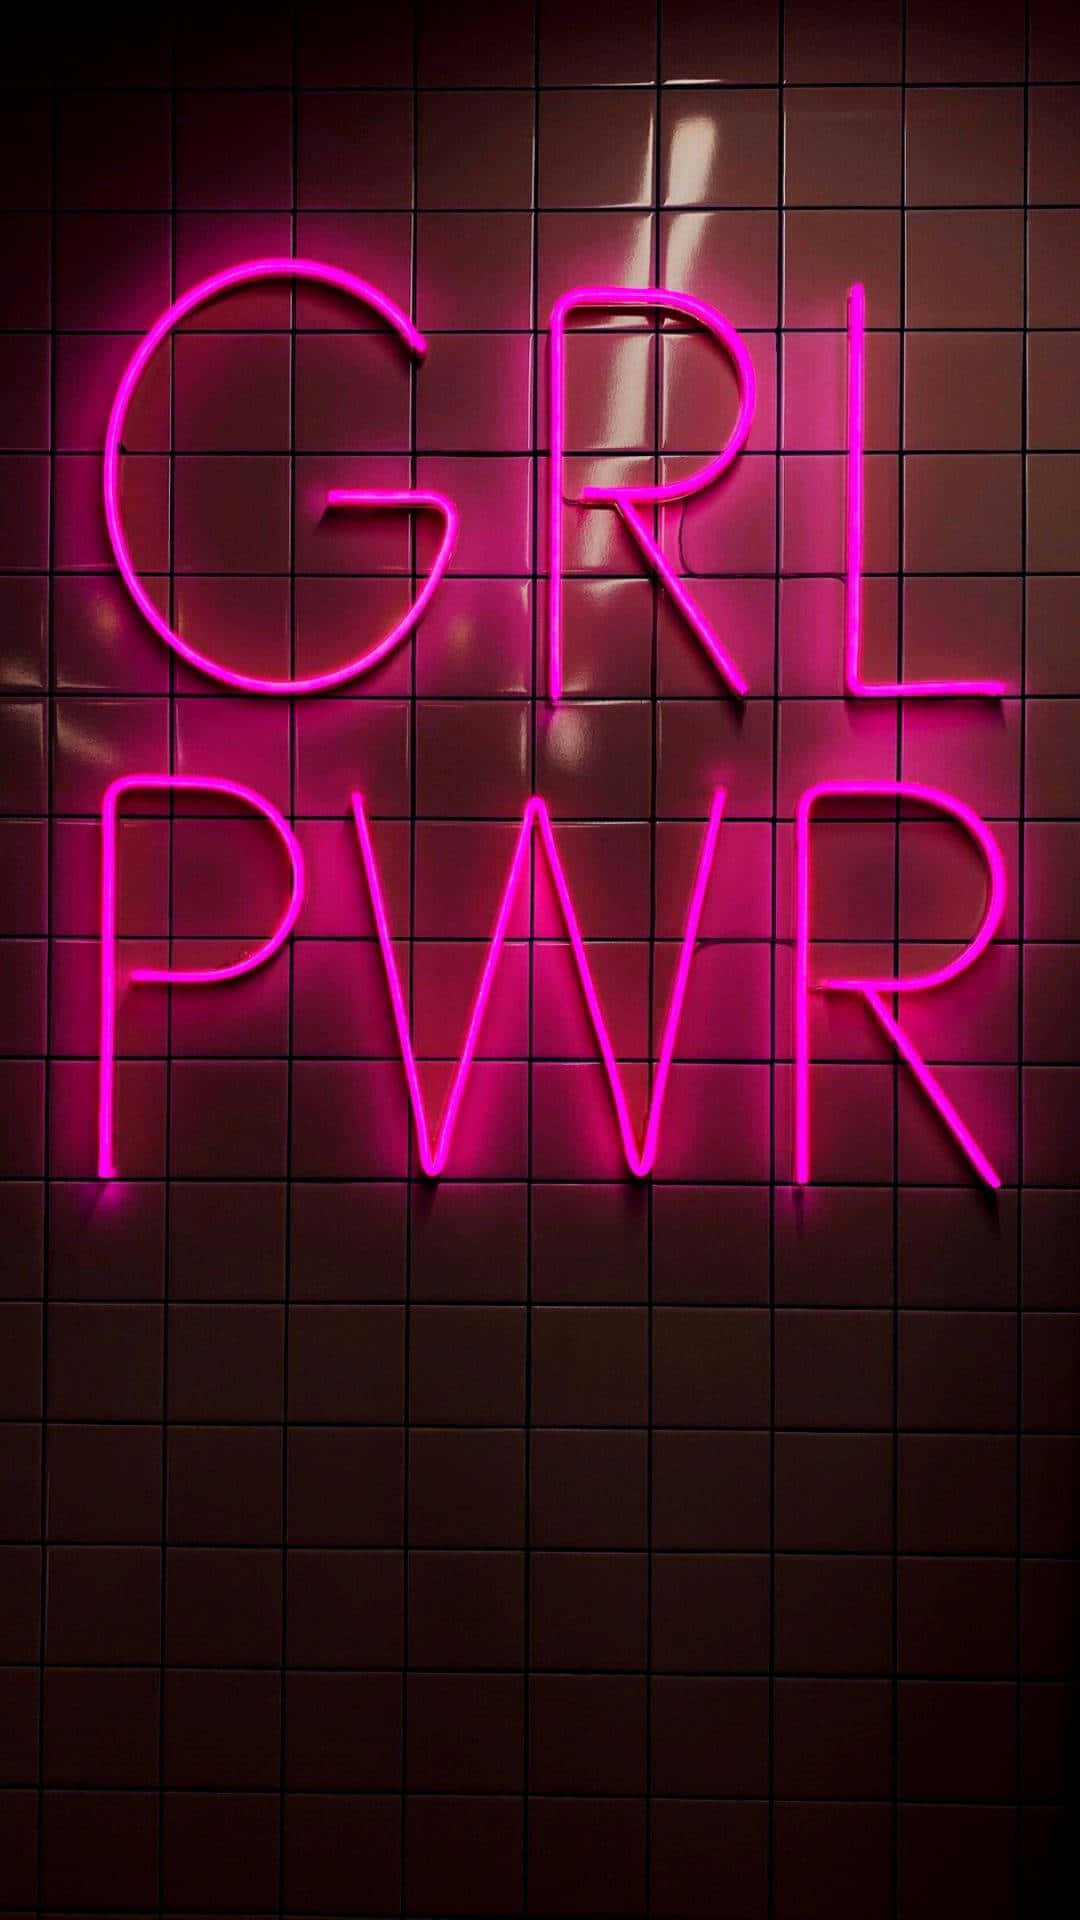 Girl Power Neon Sign Wallpaper